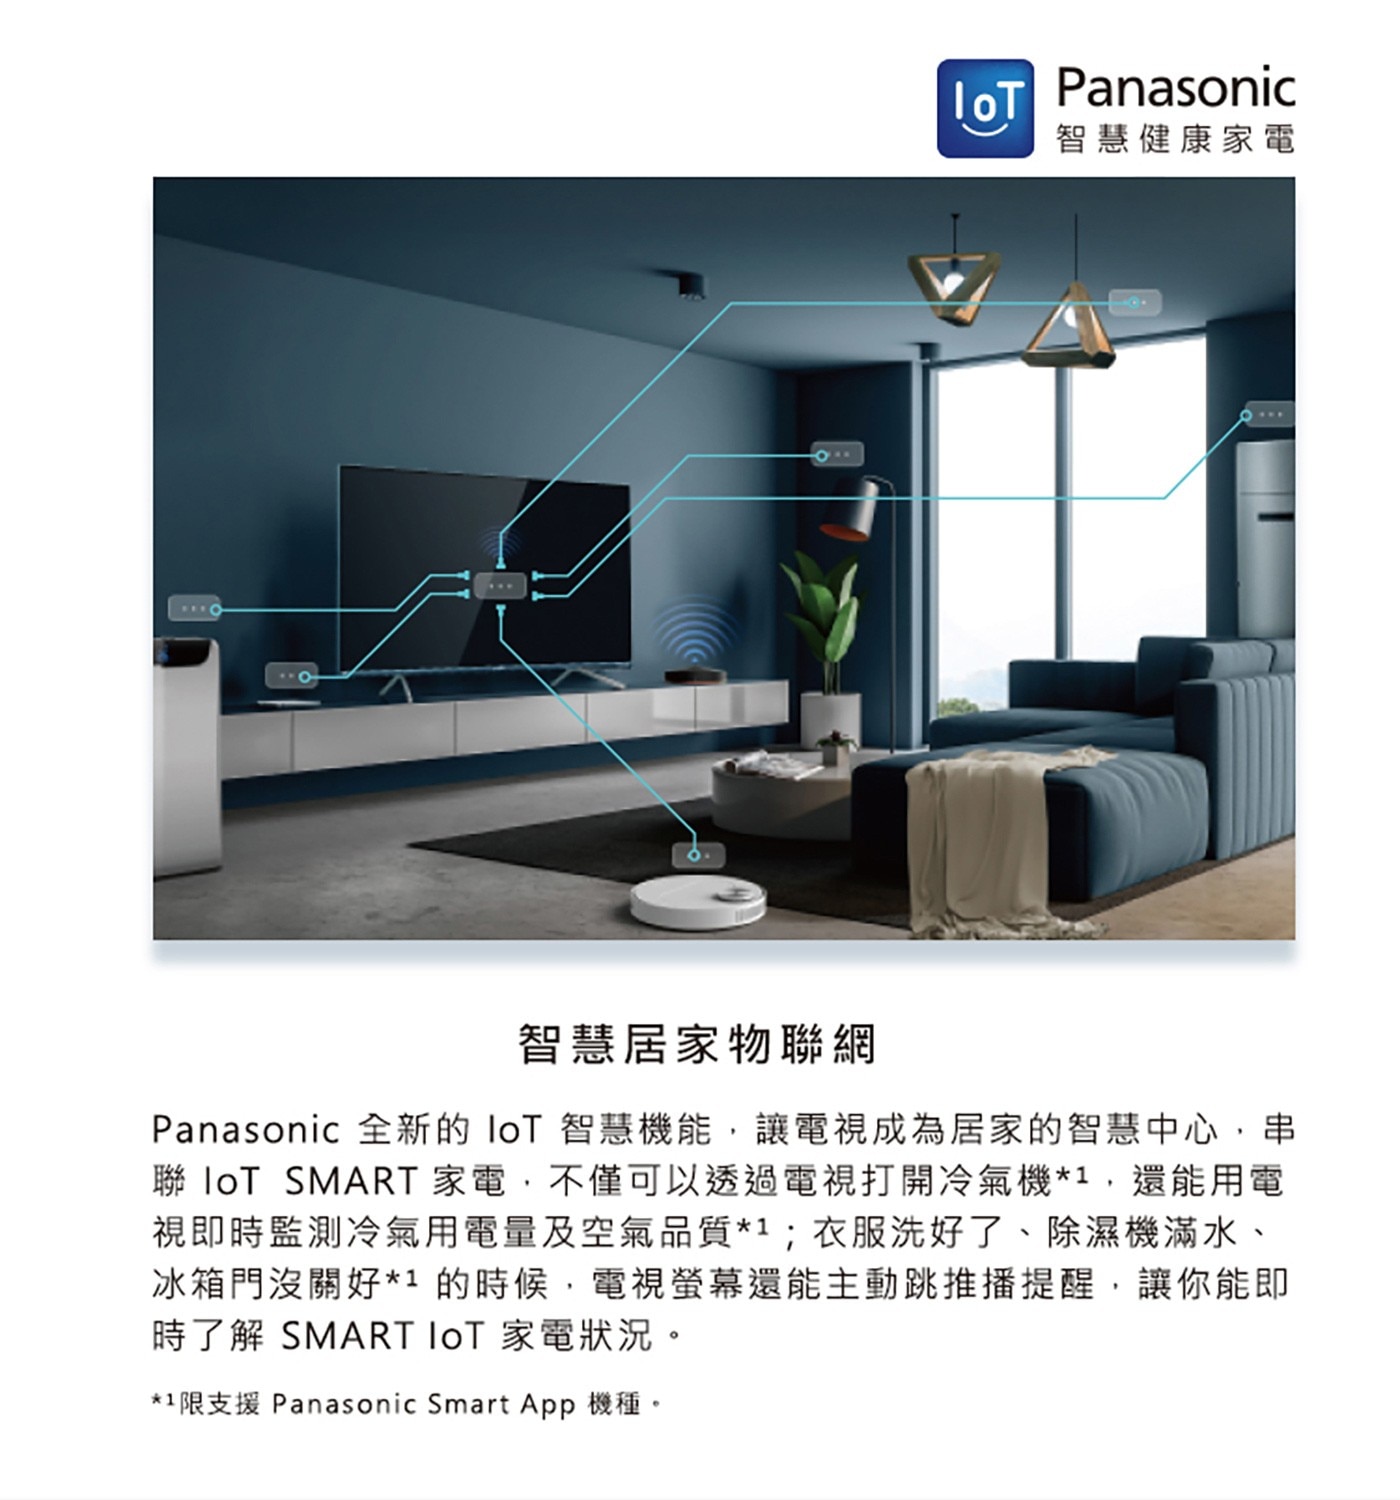 Panasonic 65吋 4K 顯示器 TH-65LX680W智慧居家物聯網讓電視成為居家的智慧中心串聯IoT Smart家電